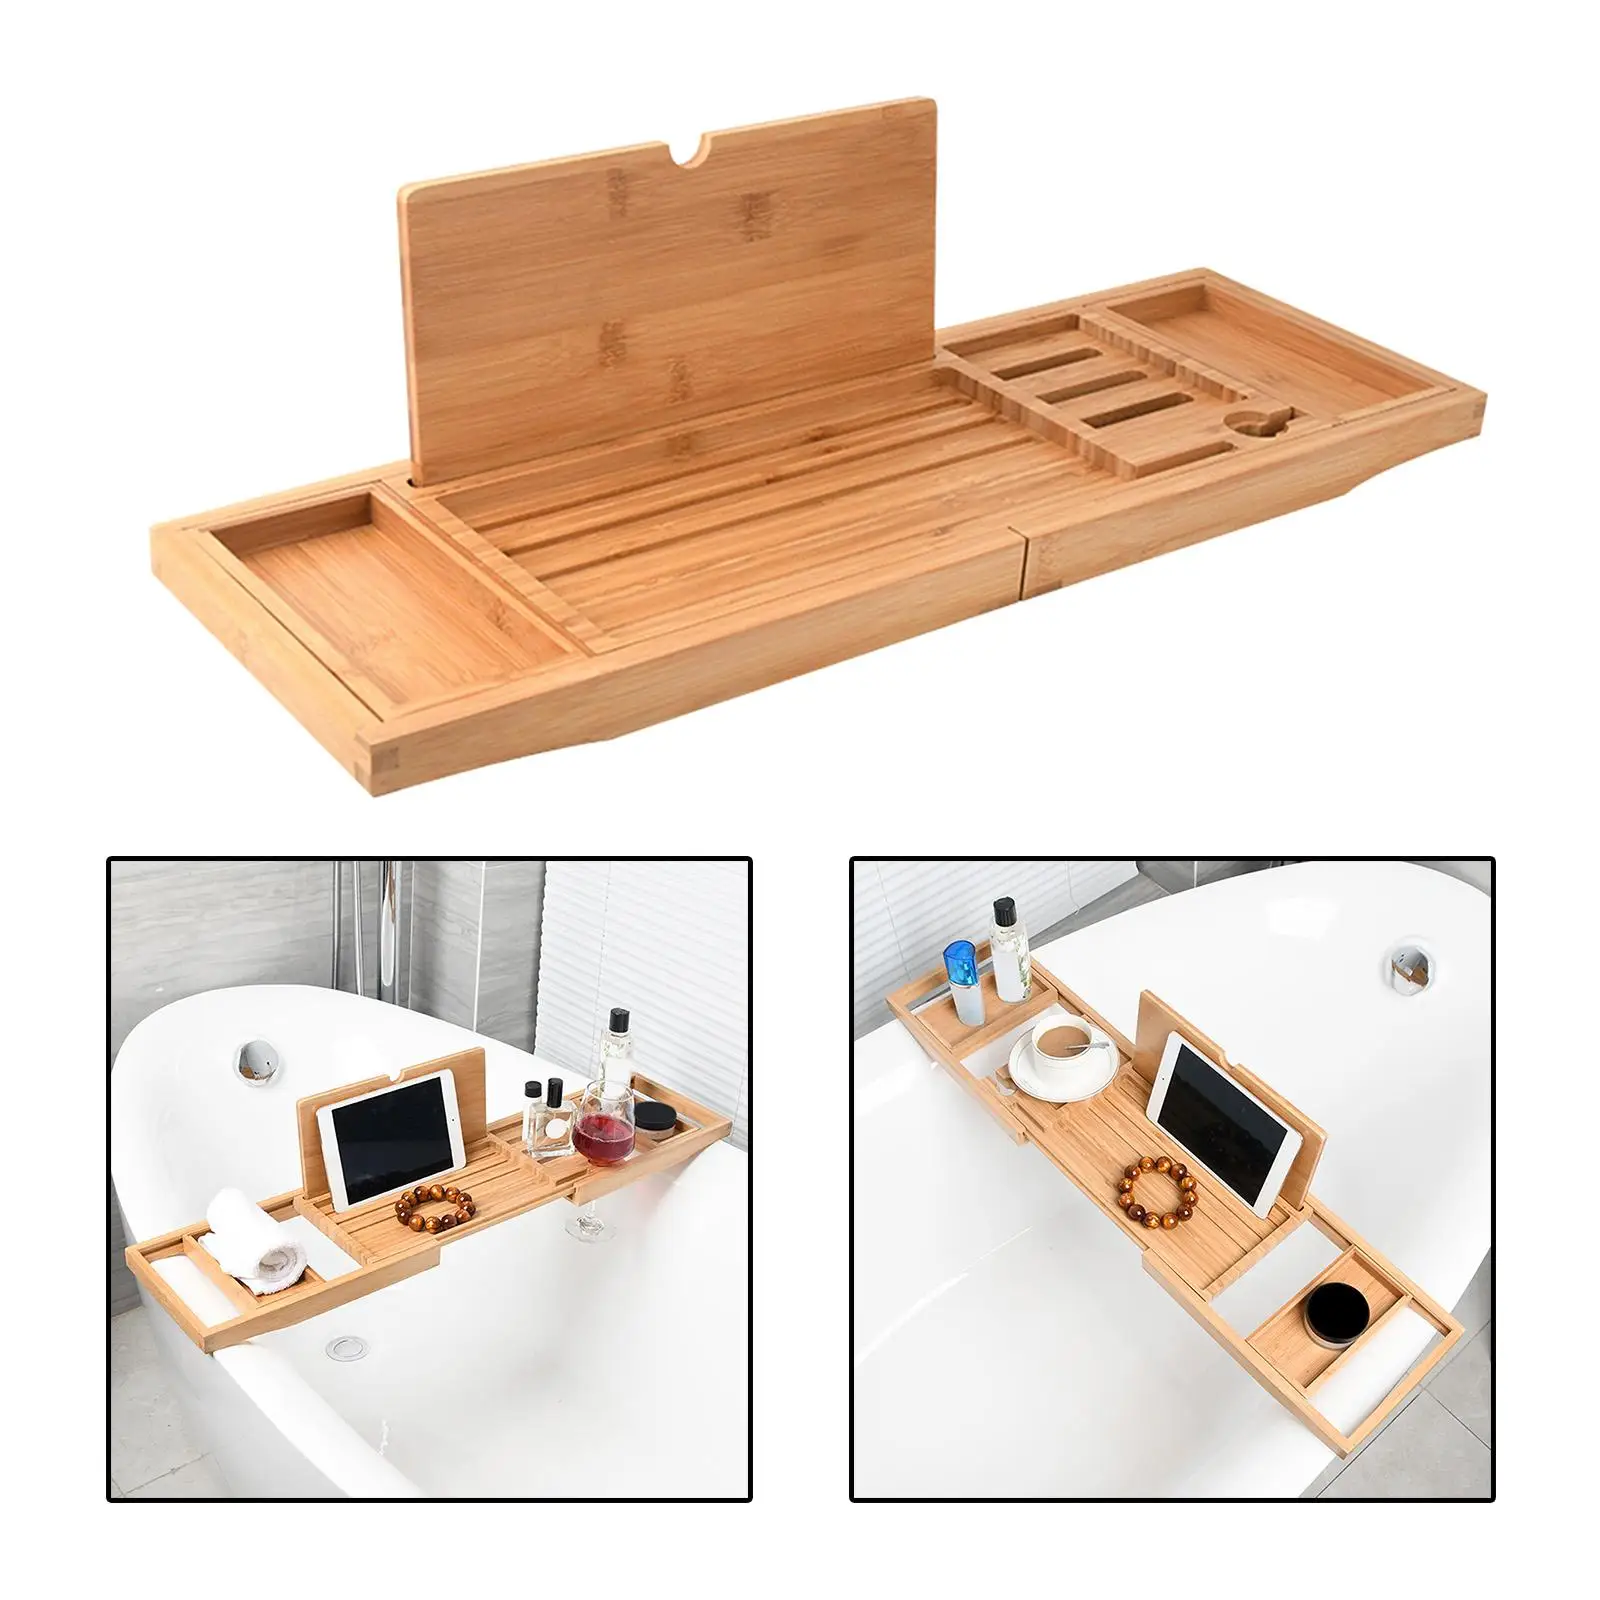 Bathtub Tray Bath Caddy Tray for Tub with Slots Holds Book,Phone ,Soap 23.62``-34.25`` Bath Tray Bathtub Stand Holder